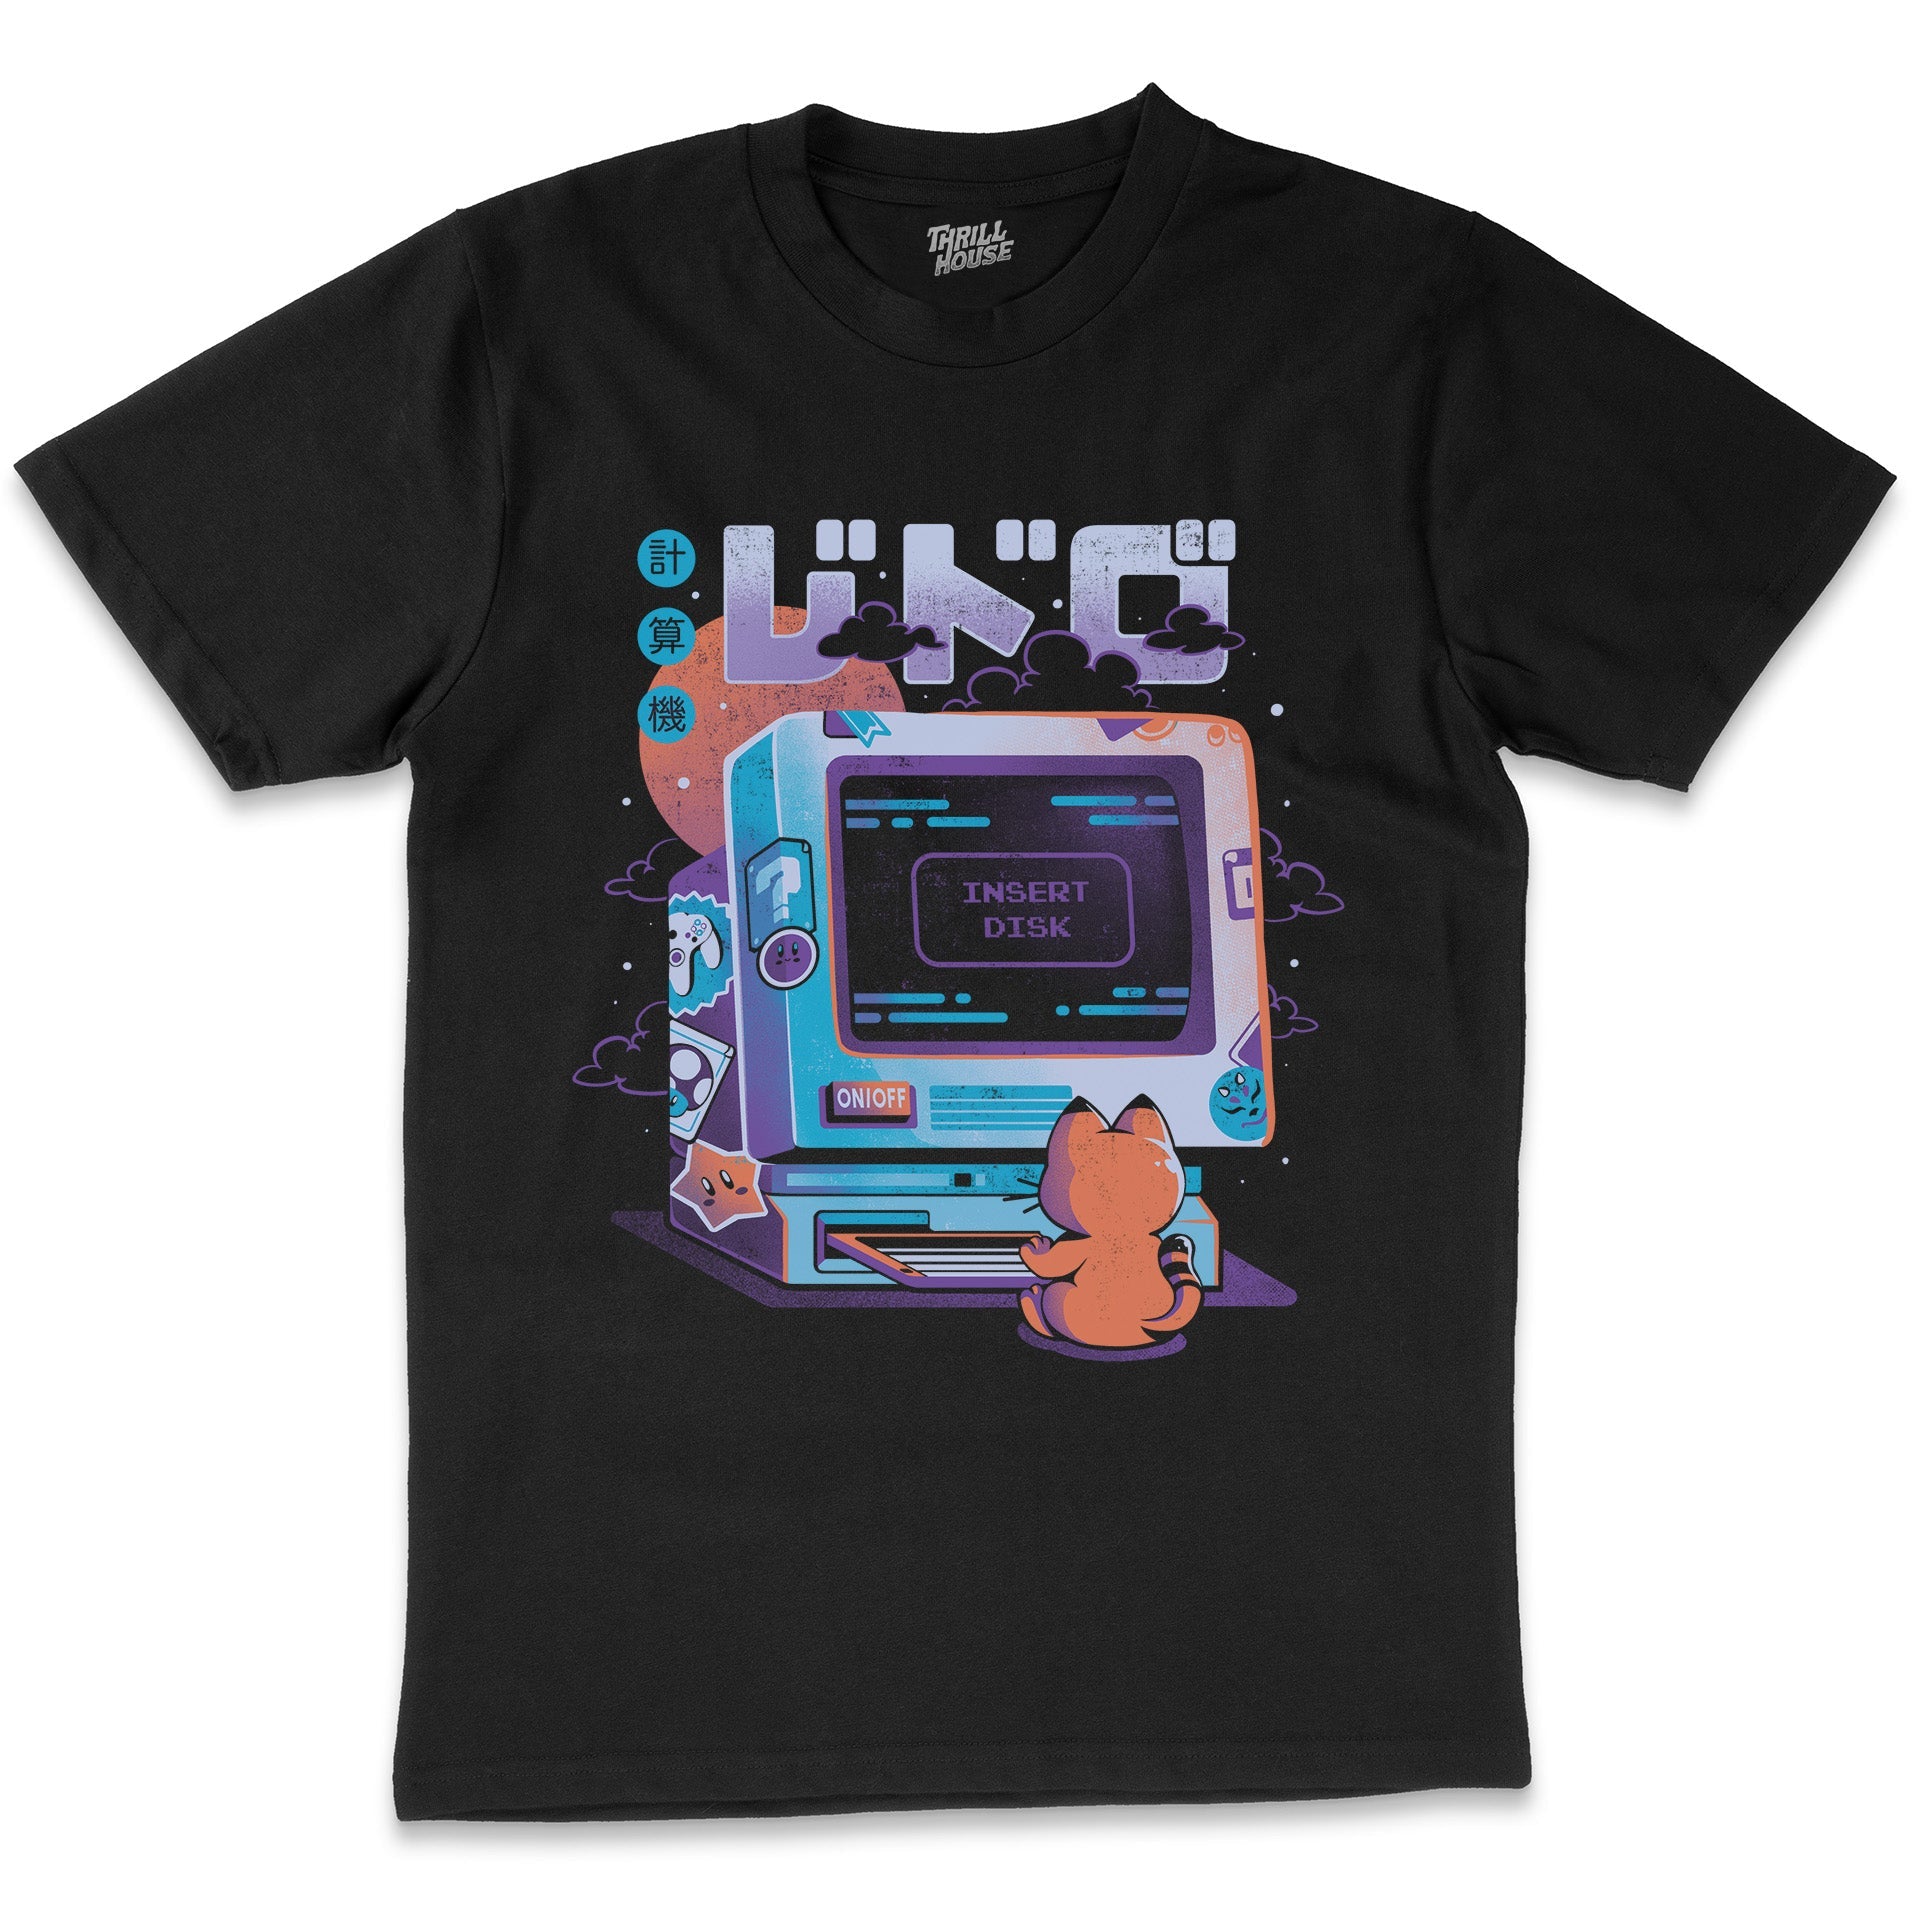 Insert Disk Funny Cat Computer Kitten Japanese Japan Nerd Geek Cotton T-Shirt